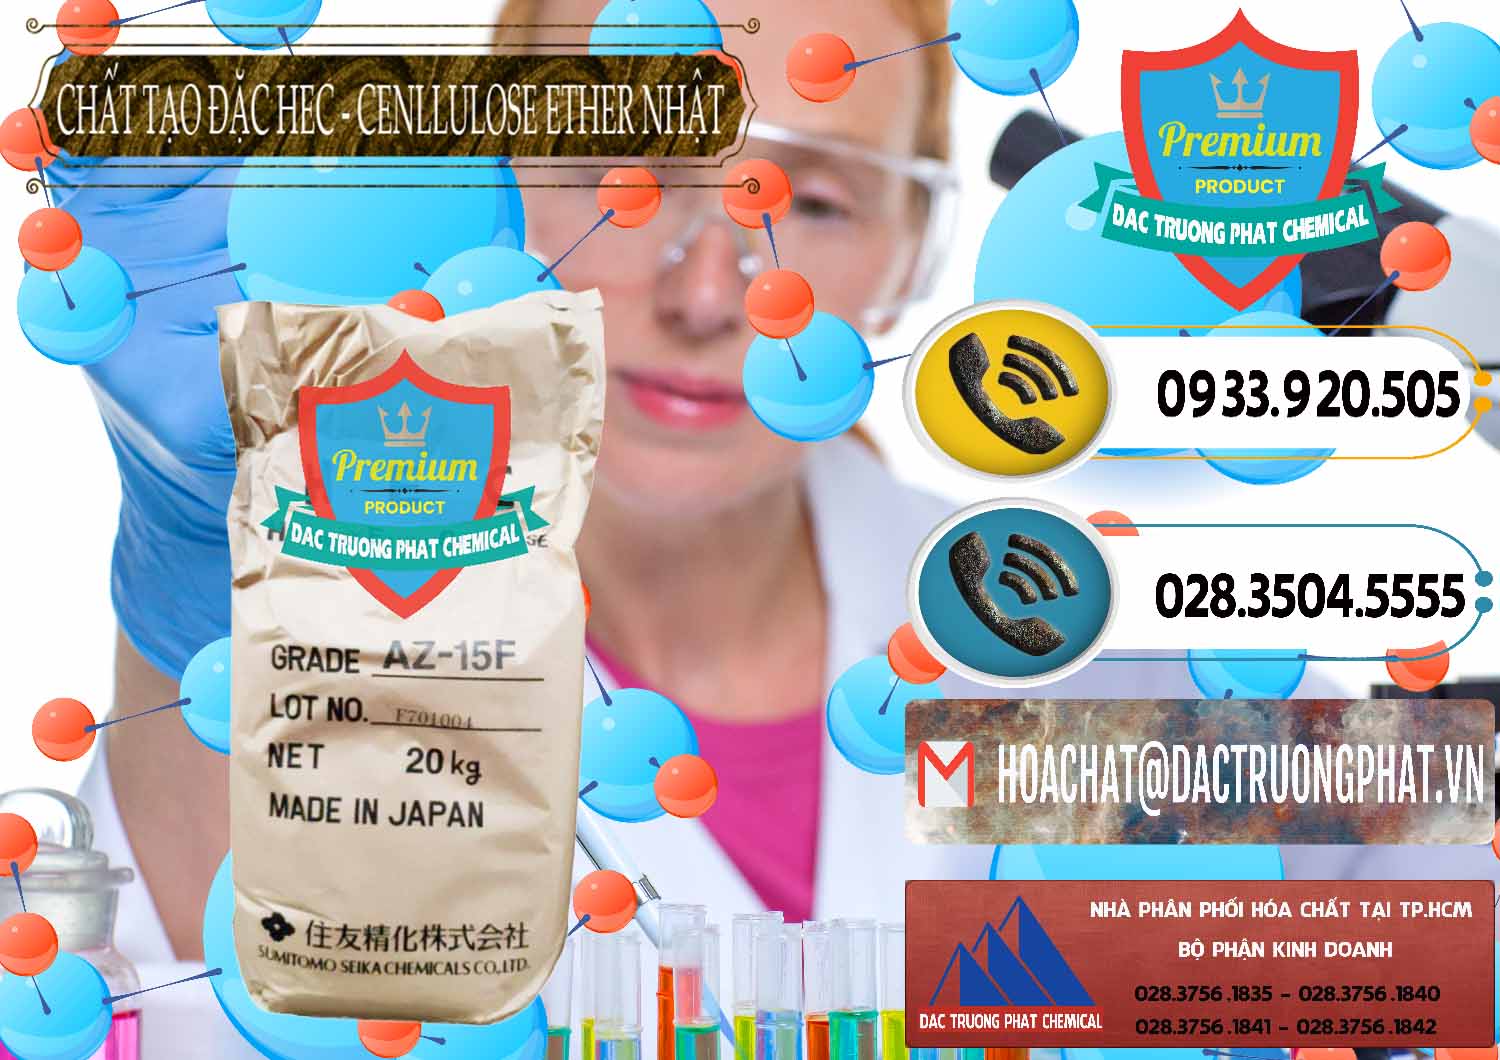 Cty chuyên phân phối và bán Chất Tạo Đặc Hec Mecellose – Cenllulose Ether Nhật Bản Japan - 0367 - Công ty cung cấp ( bán ) hóa chất tại TP.HCM - hoachatdetnhuom.vn